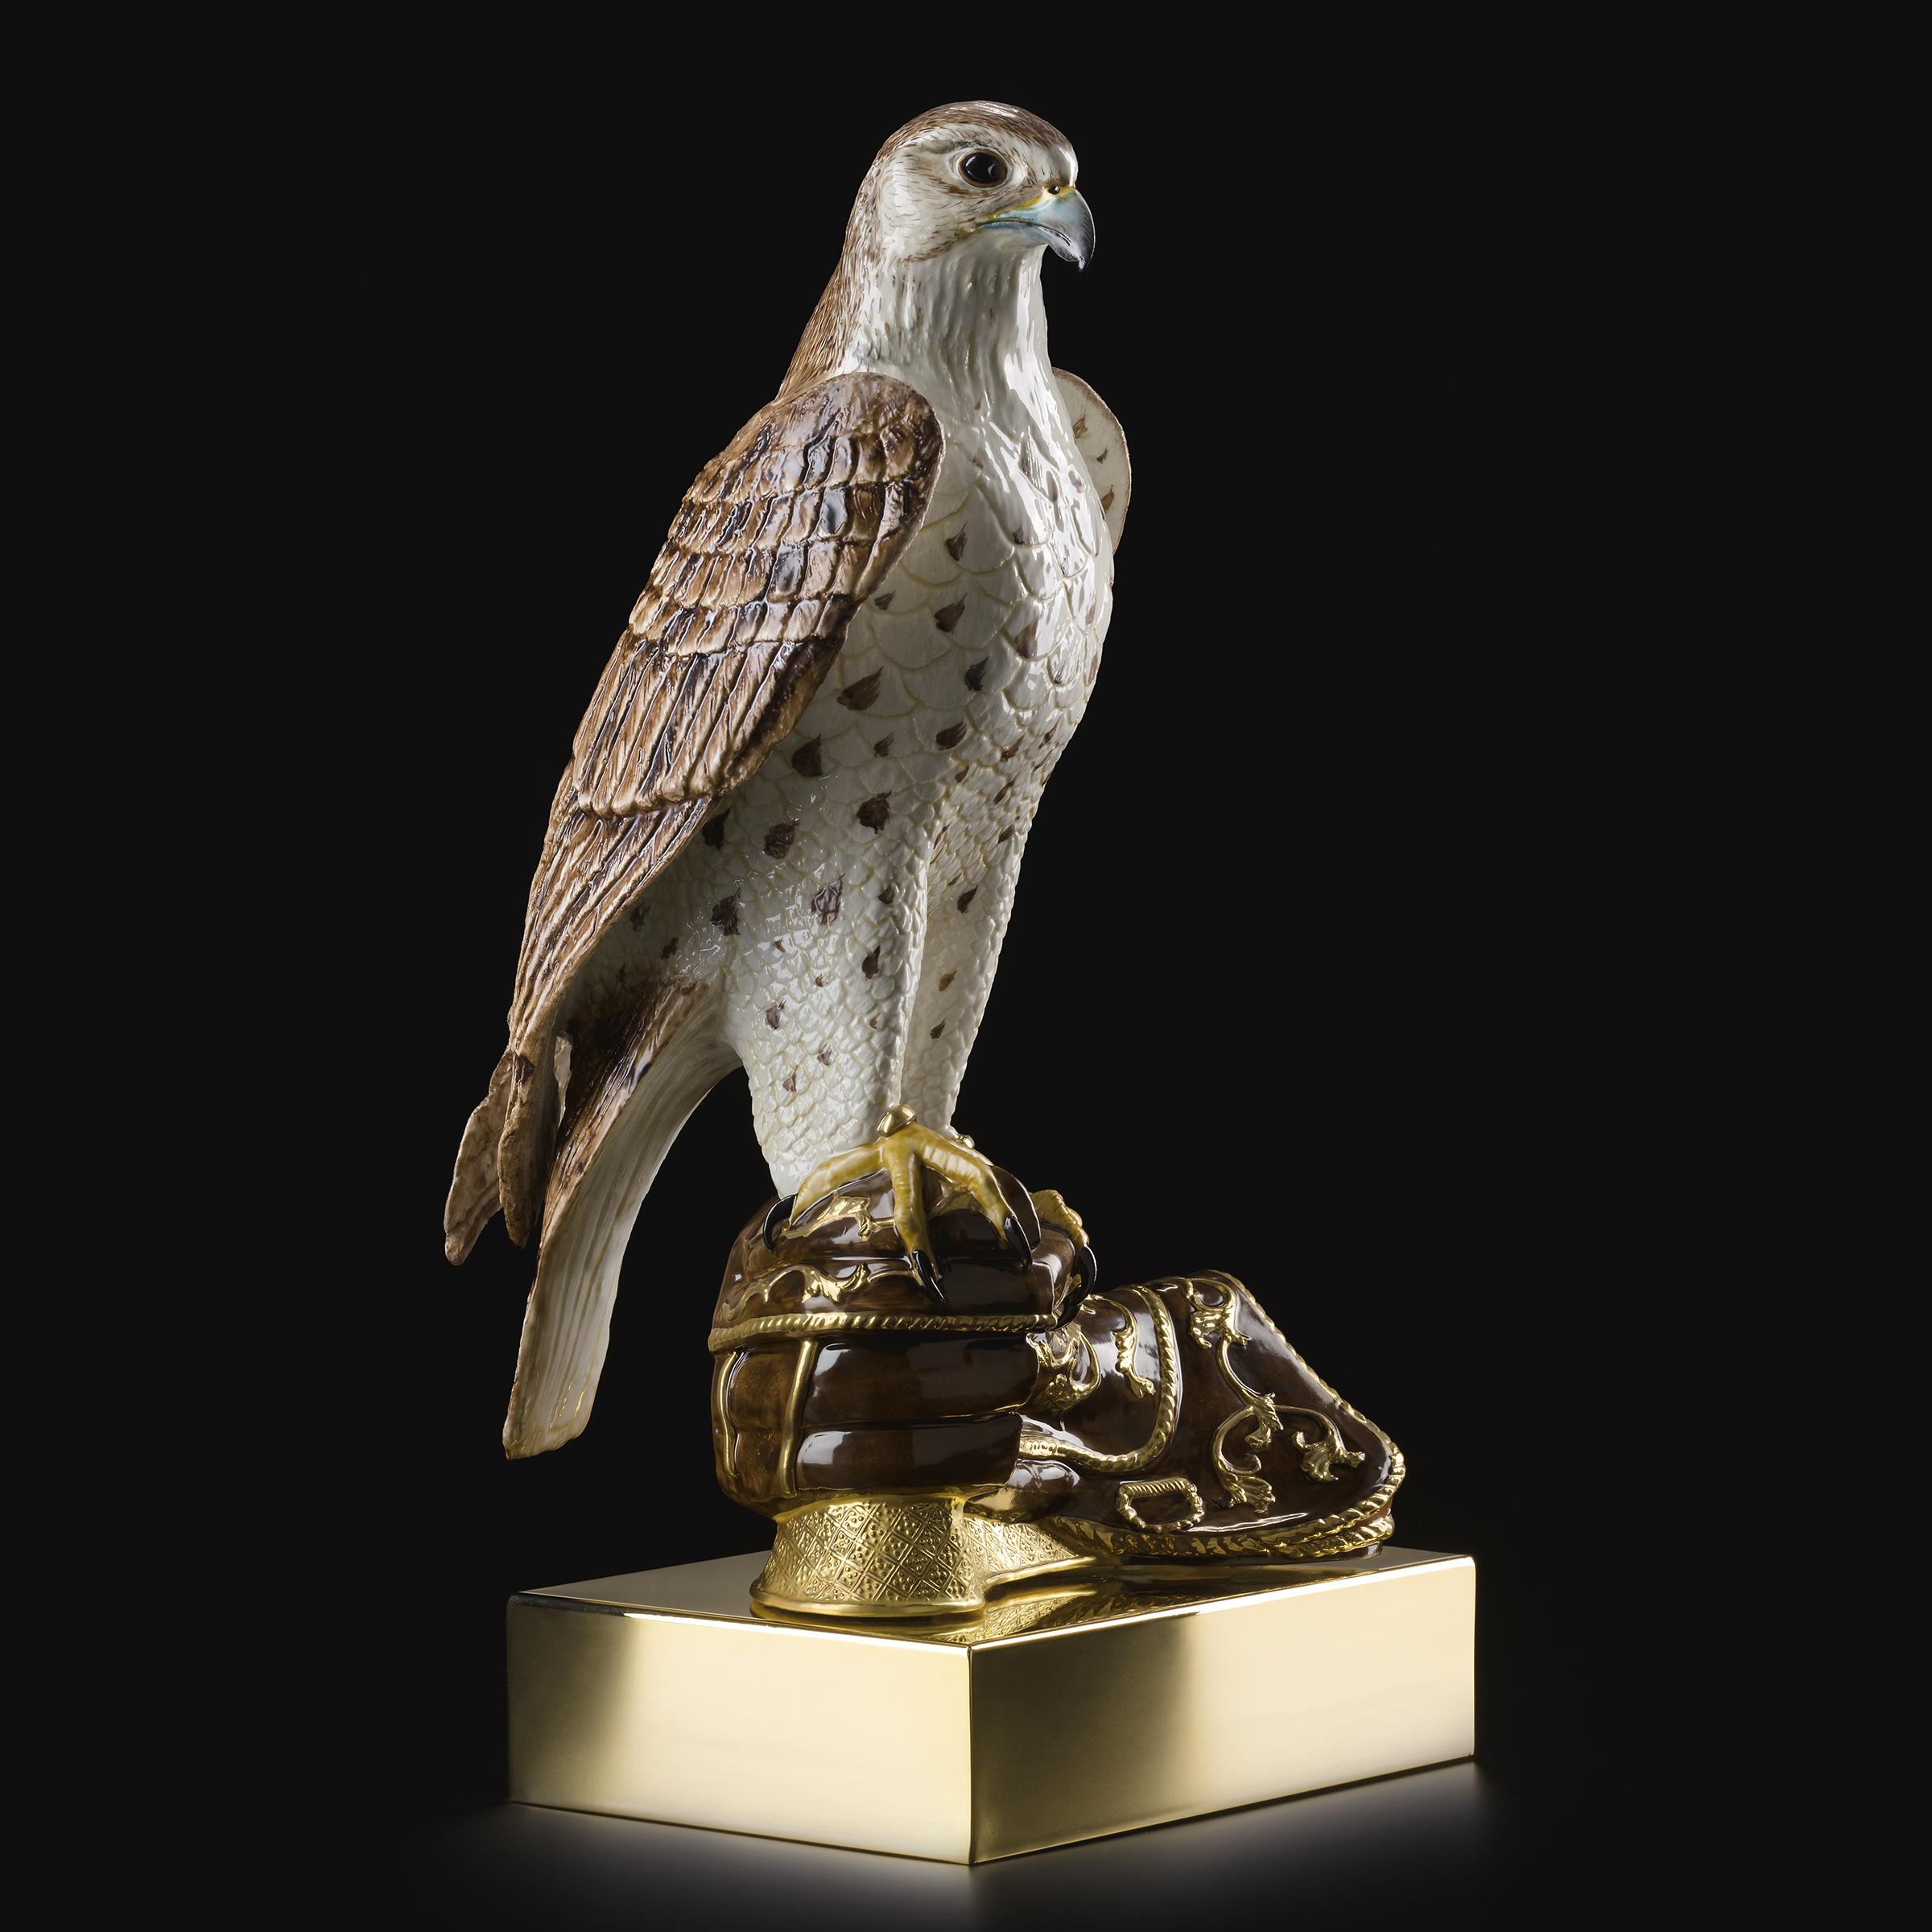 Skulptur Falke aus handgefertigtem Porzellan,
handbemaltes Stück mit 24-karätigem Goldfinish
Limitierte Auflage von 300 Stück.